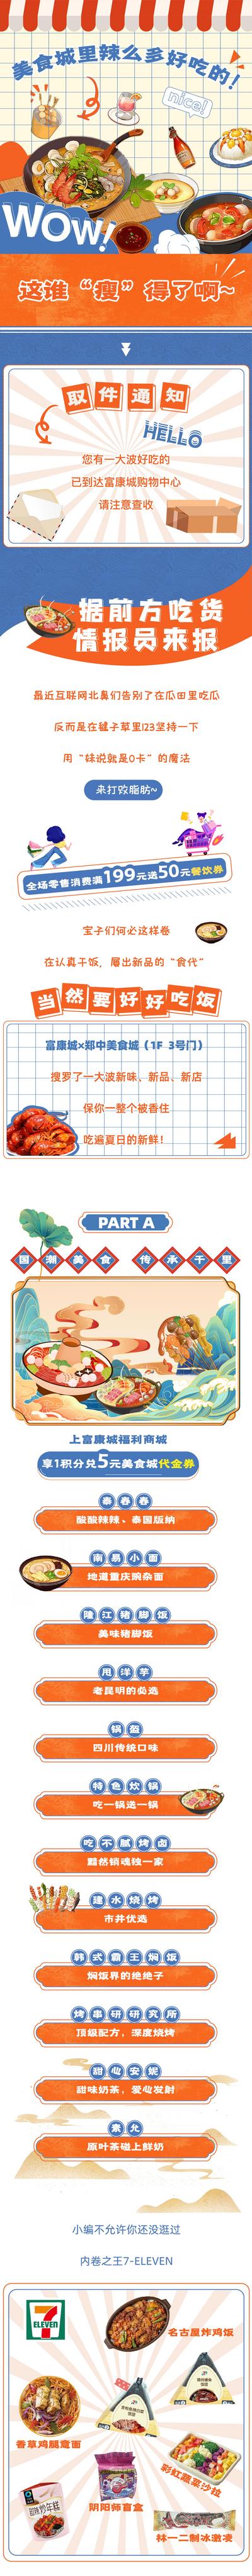 南门网 专题设计 长图 商业 餐饮 美食 小吃街 促销 手绘 卡通